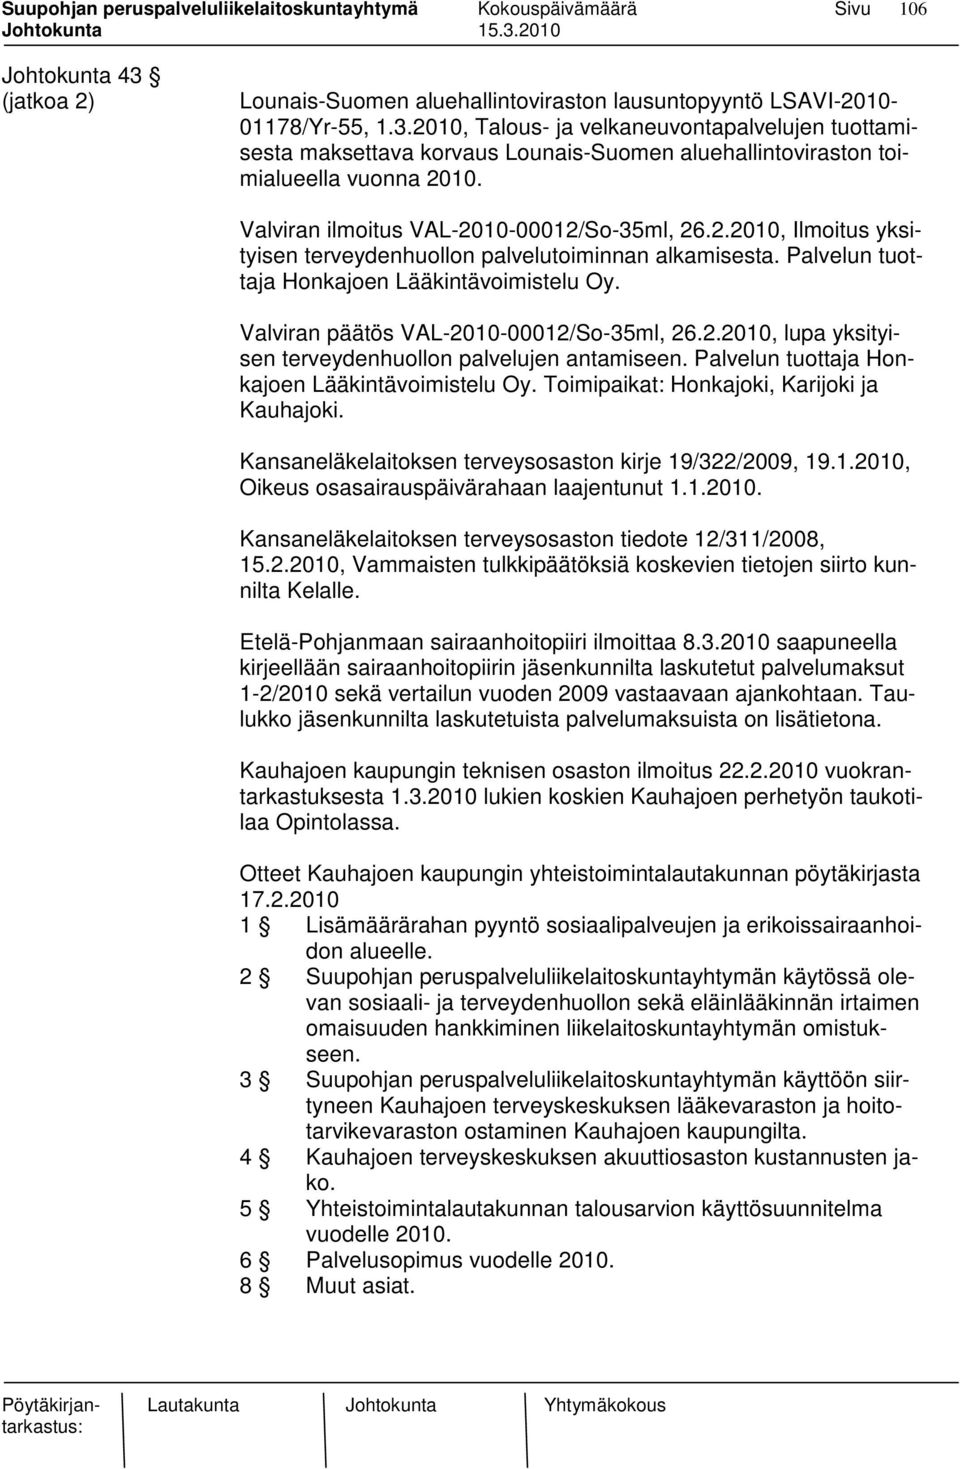 Valviran päätös VAL-2010-00012/So-35ml, 26.2.2010, lupa yksityisen terveydenhuollon palvelujen antamiseen. Palvelun tuottaja Honkajoen Lääkintävoimistelu Oy.